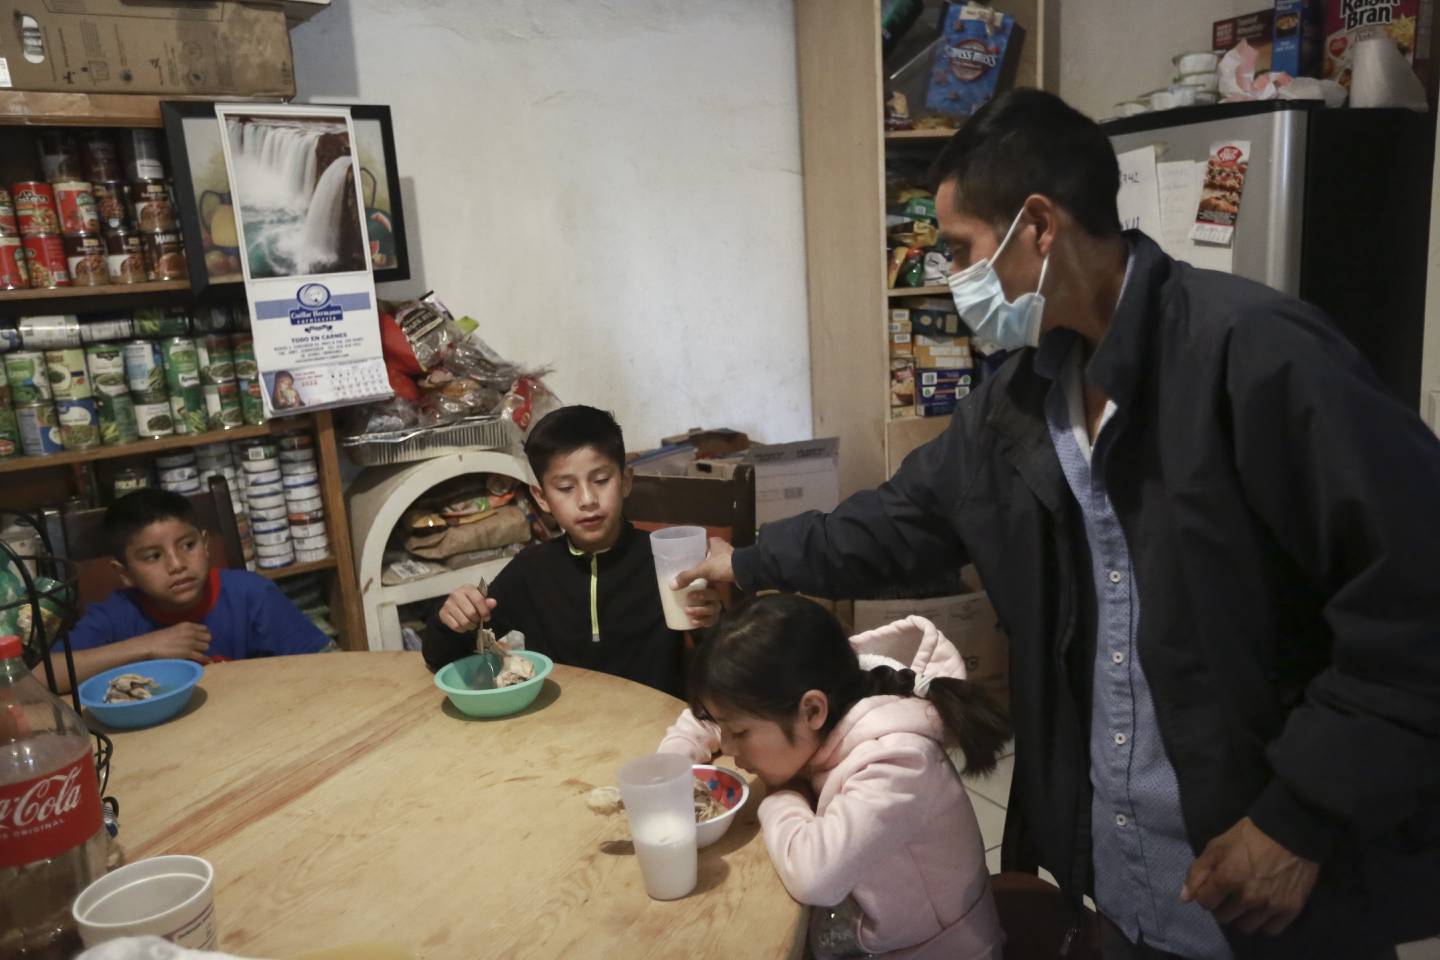 FROKOST: Juan Pacheco (12) og de andre barna spiser frokost før de skal på skolen. Familien flyktet fra delstaten Guerrero på grunn av kartellvold.